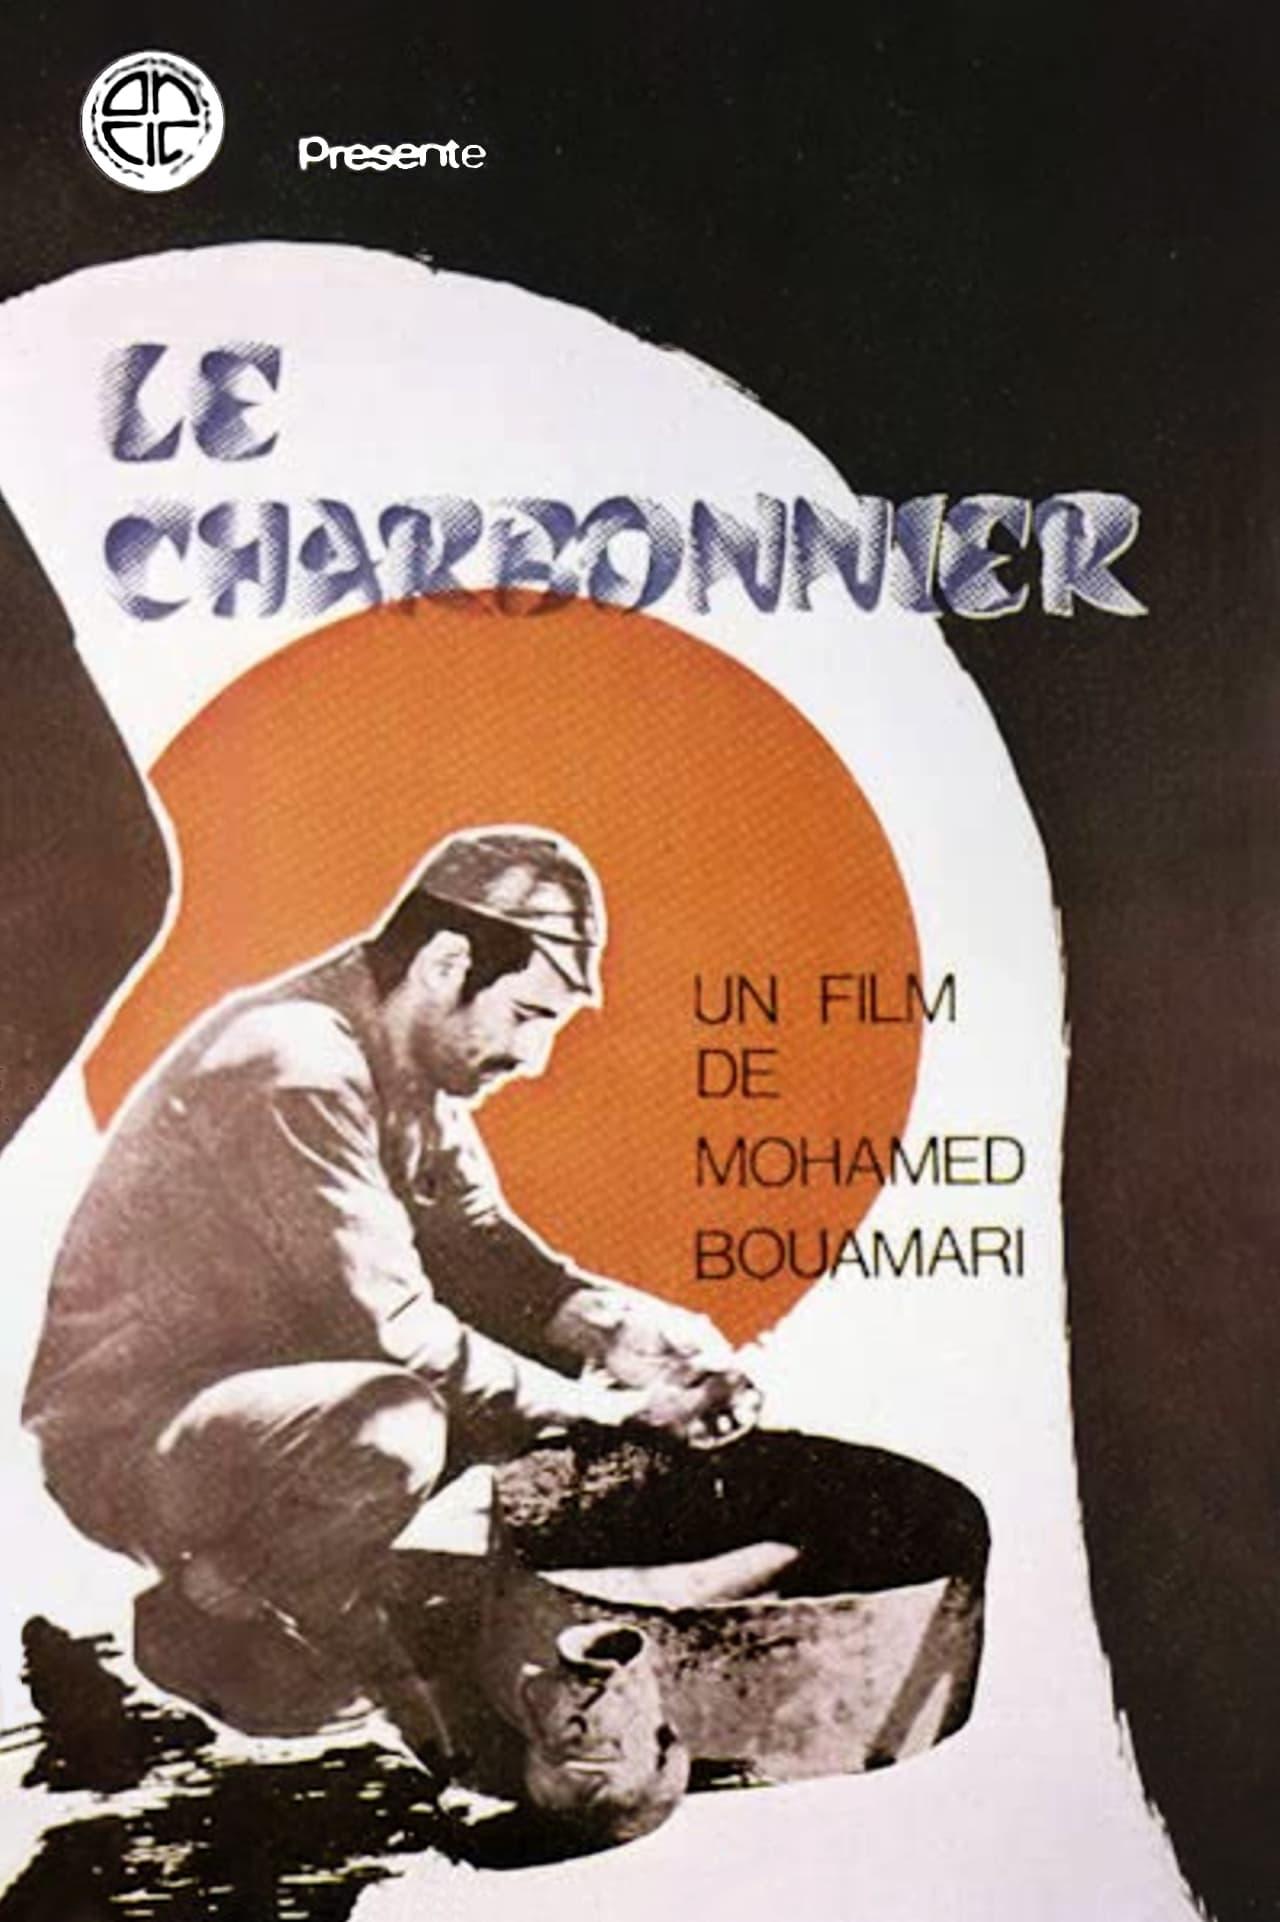 Le Charbonnier poster